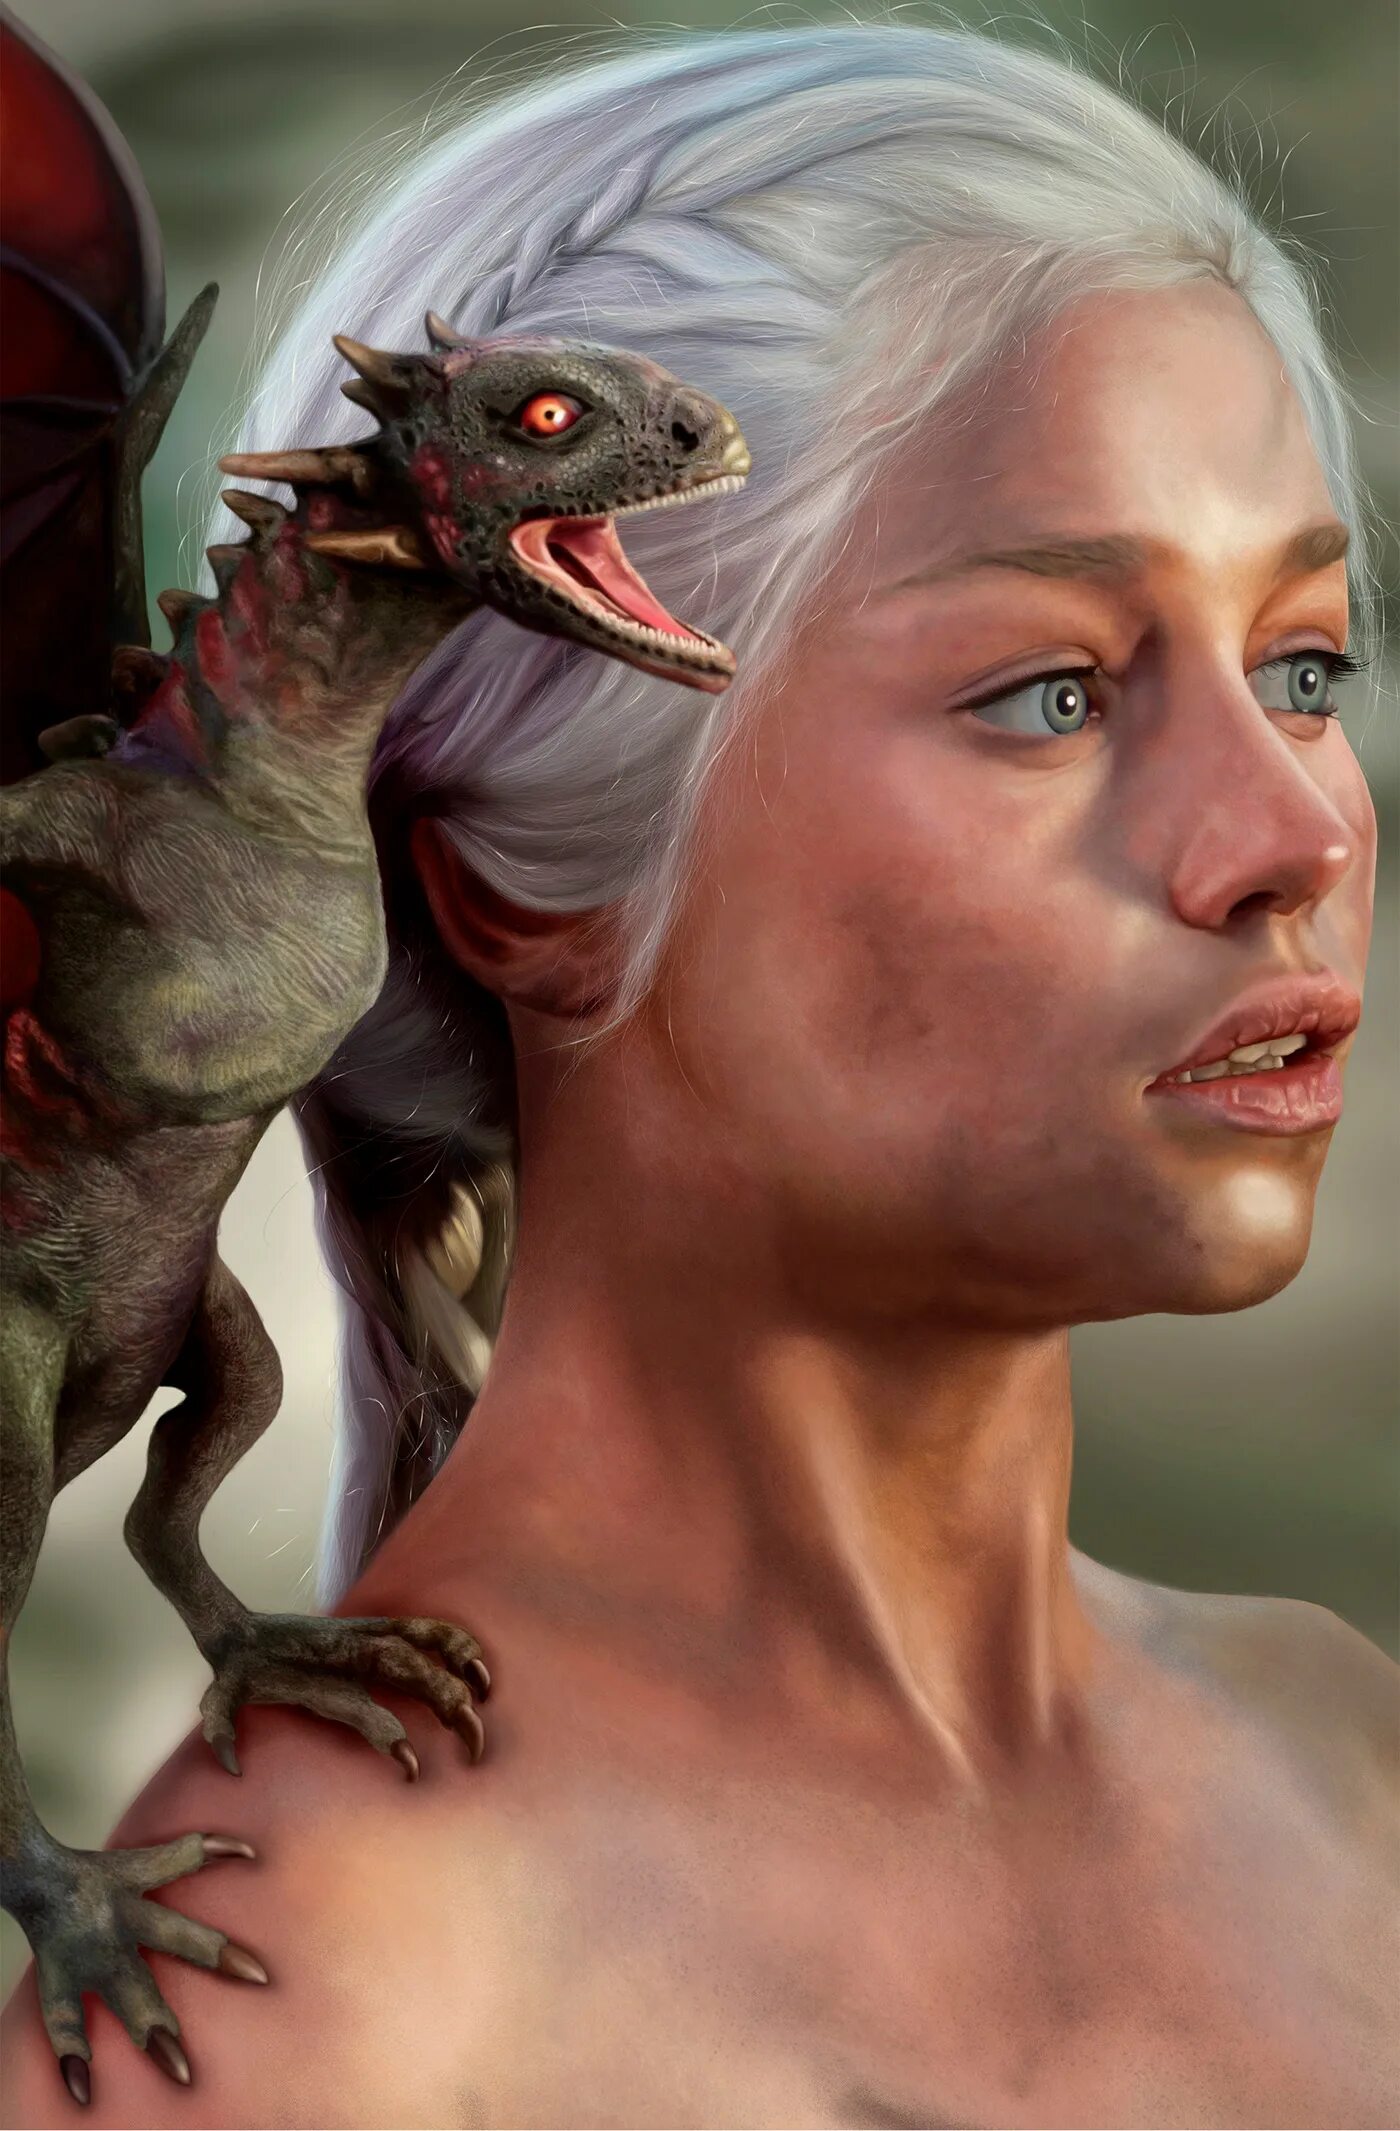 The mother of dragons. Дейенерис Таргариен. Дейенерис Таргариен с драконами. Дейенерис Бурерожденная с драконами. Дейенерис Таргариен мать дракона.